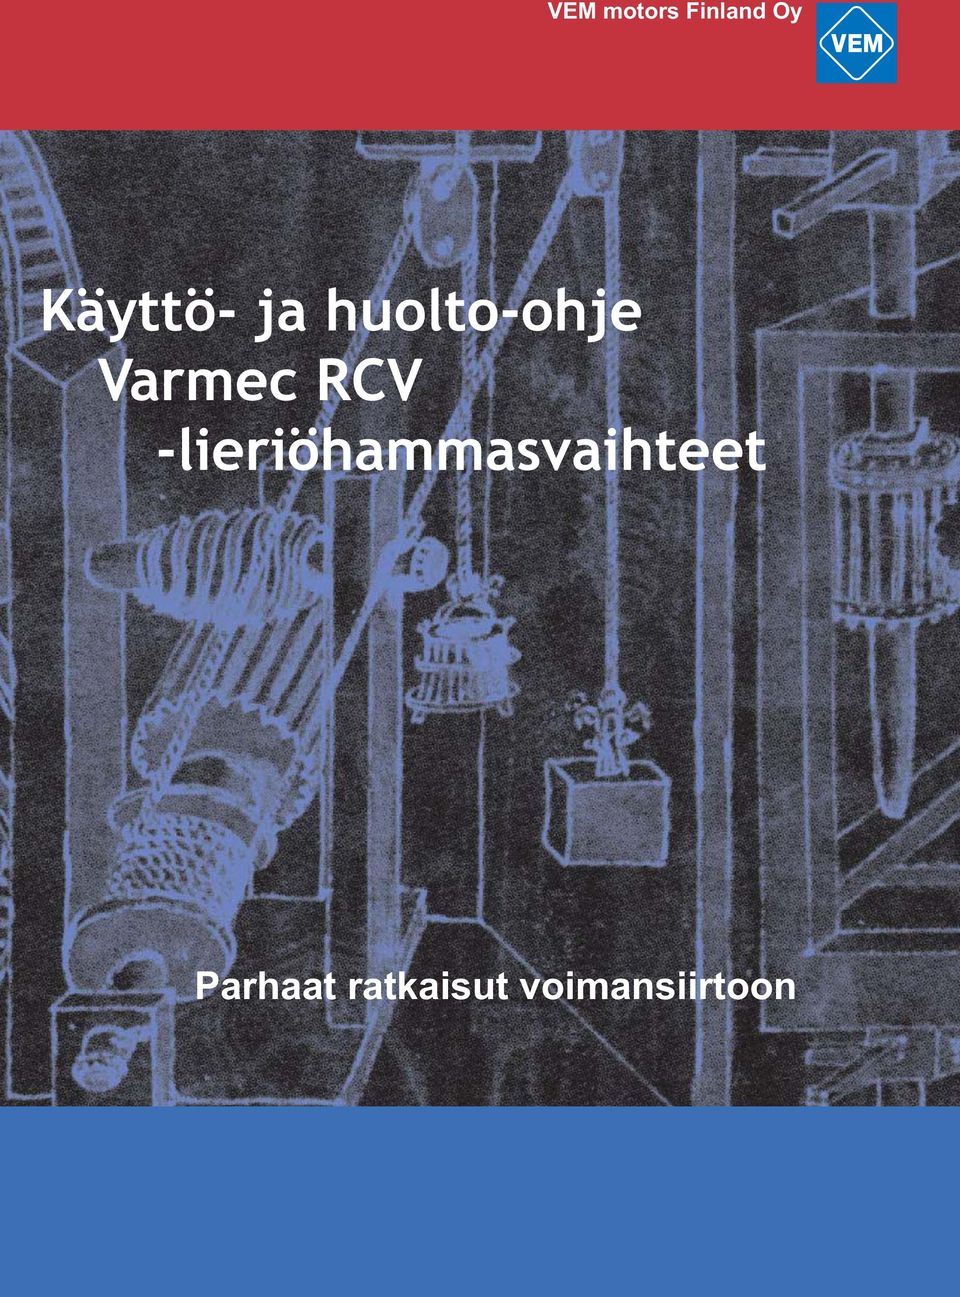 Varmec RCV